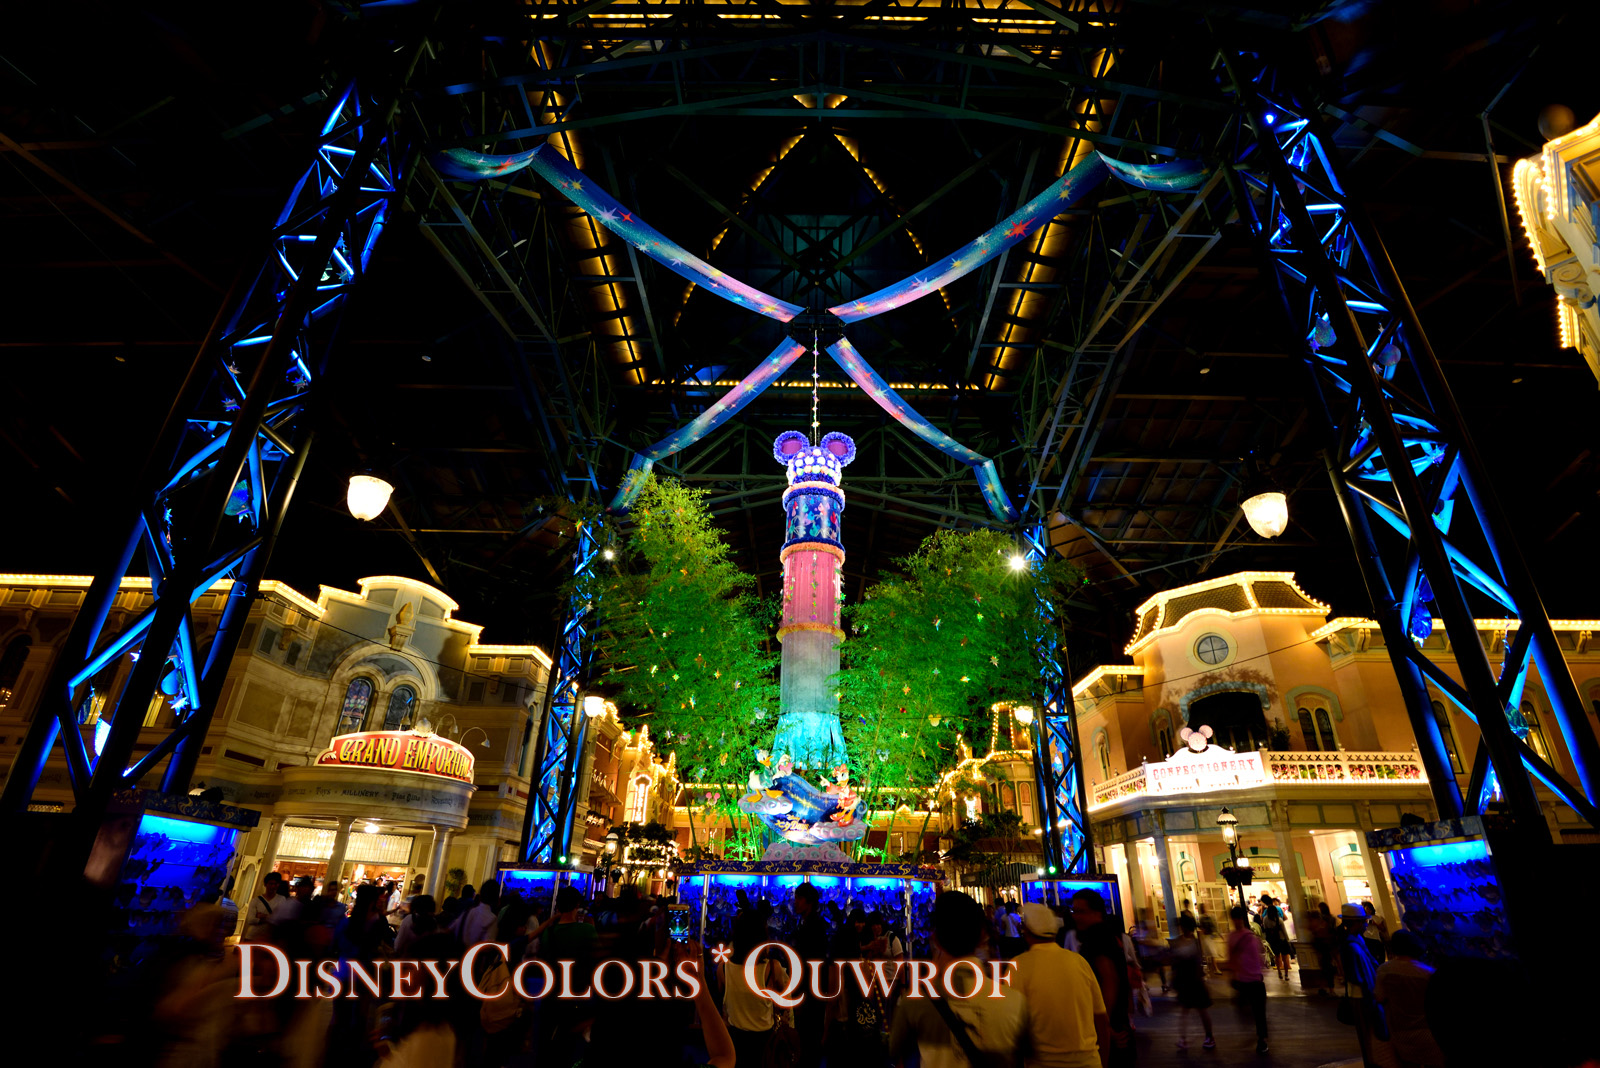 今年は3週間開催 Tdl Tds ディズニー七夕デイズ16 詳細発表 Disney Colors Blog